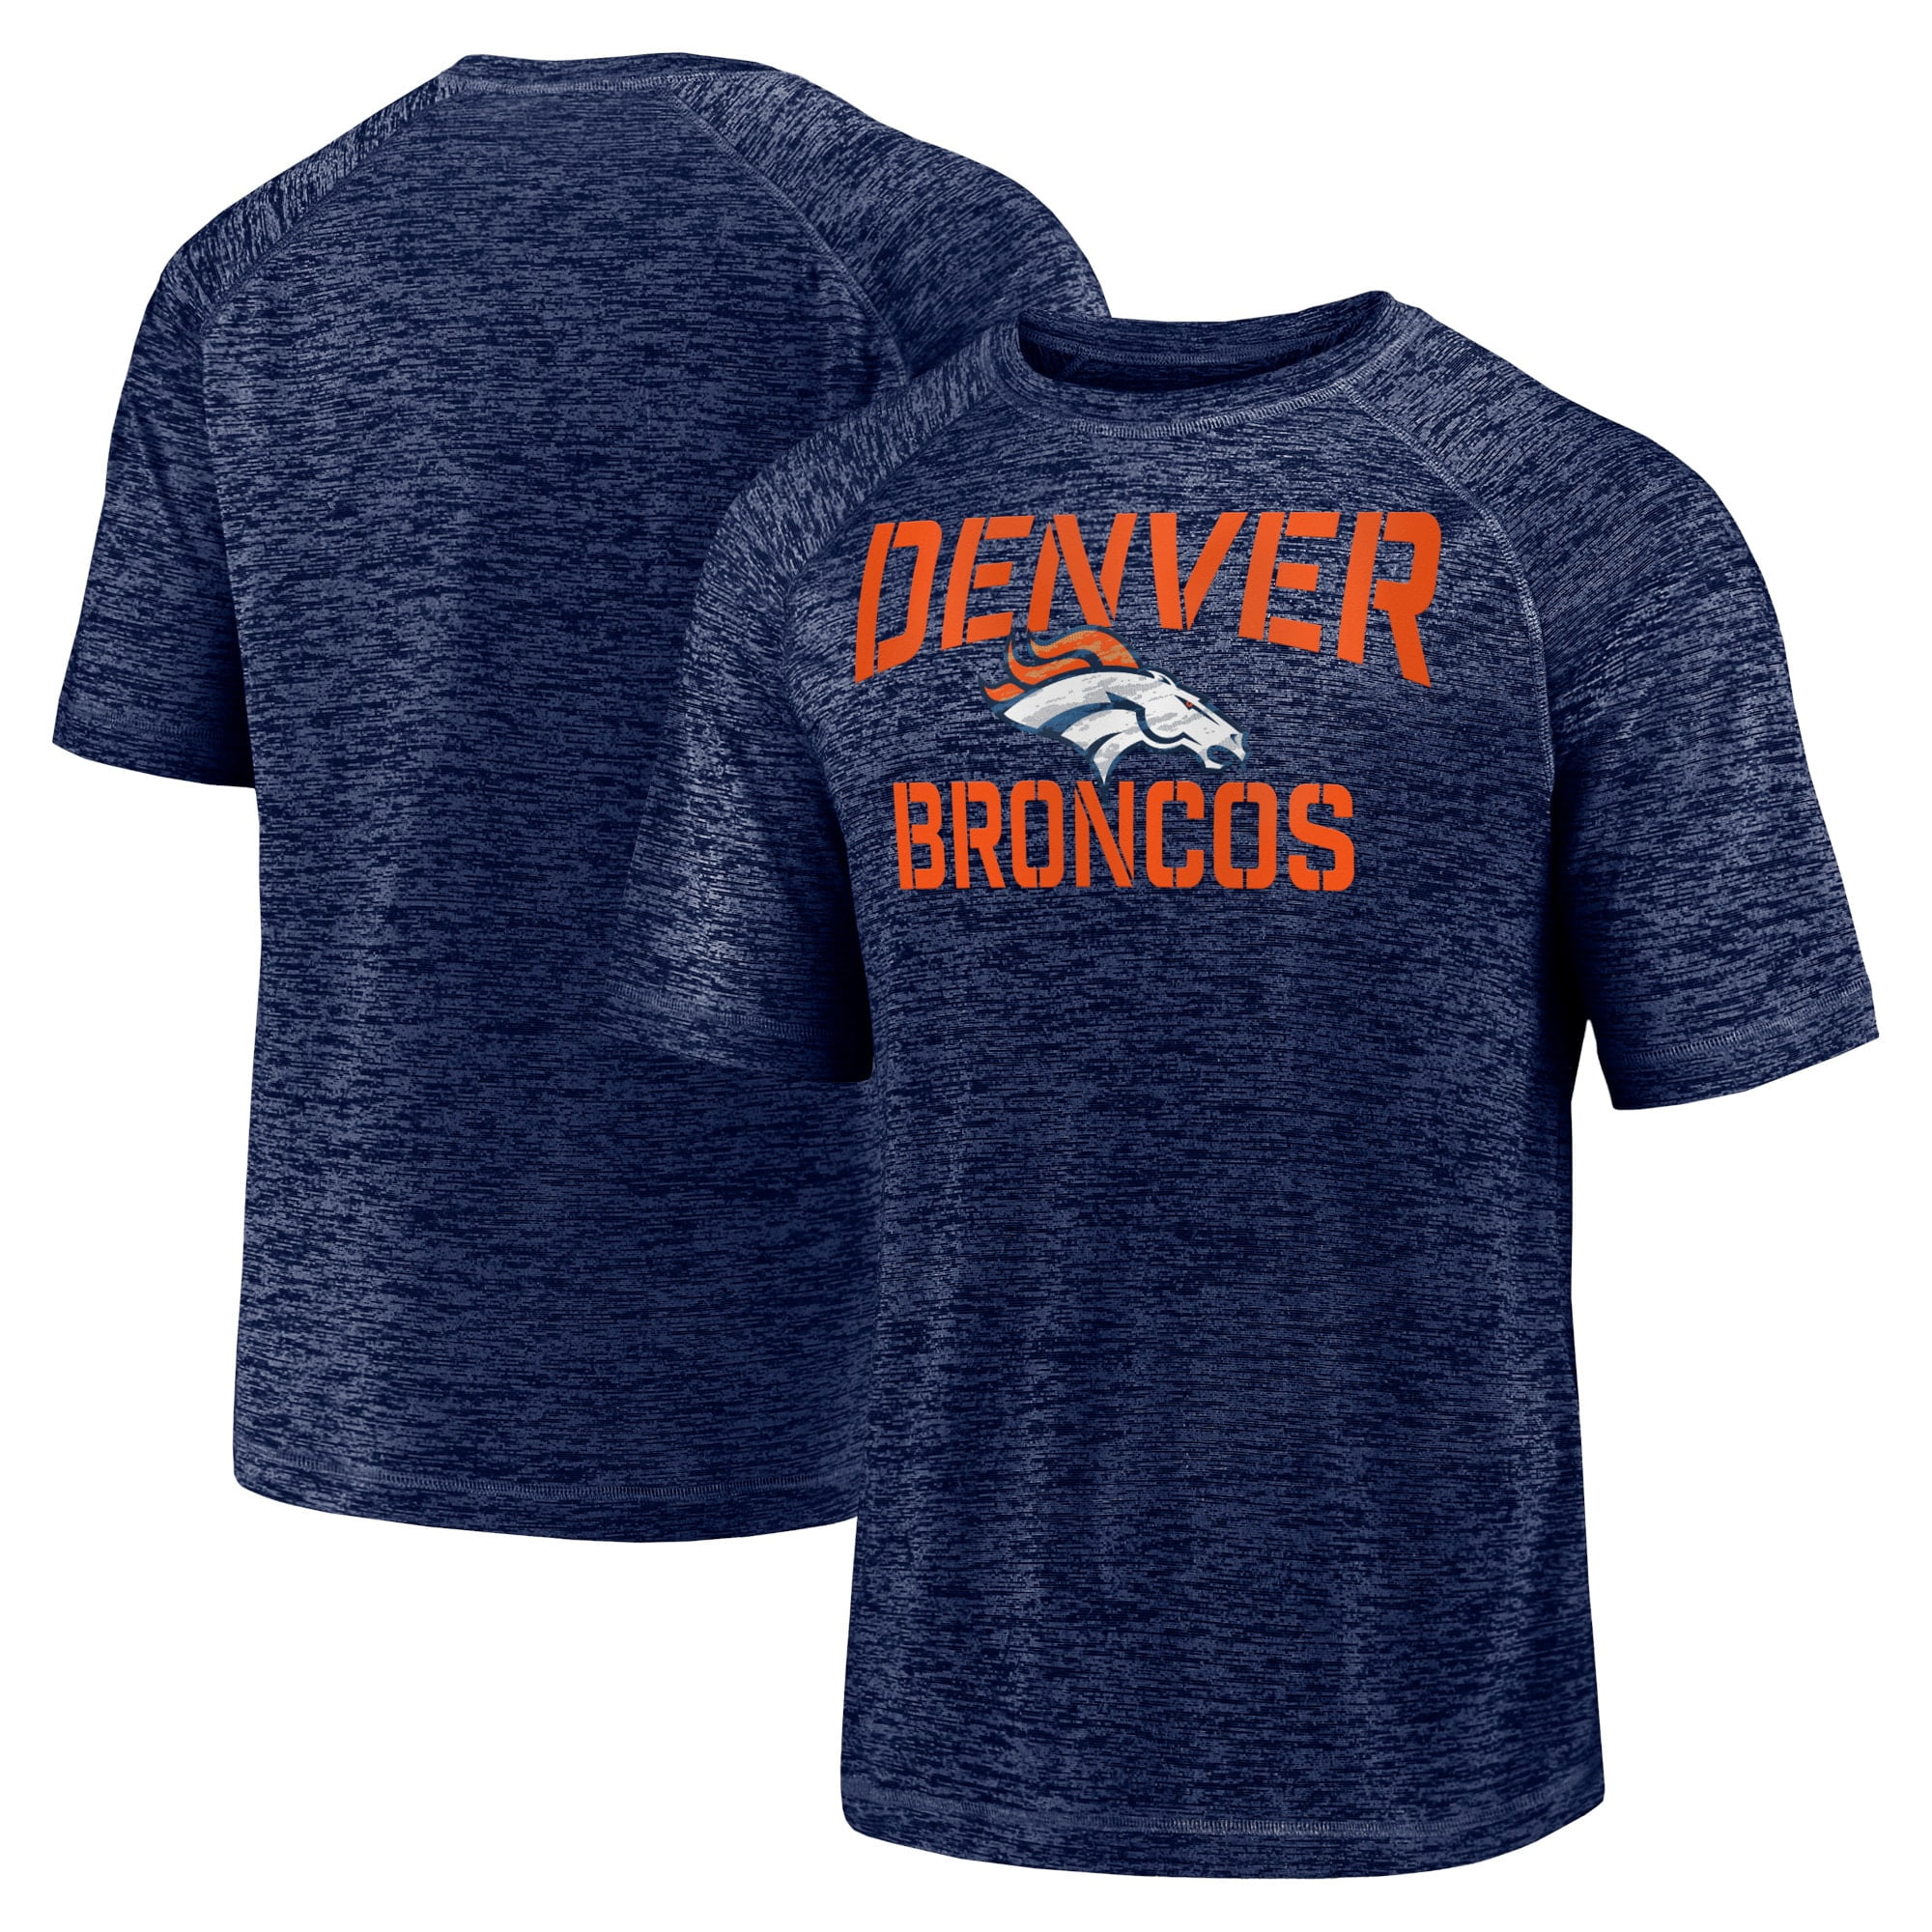 Denver Broncos T-Shirts - Walmart.com